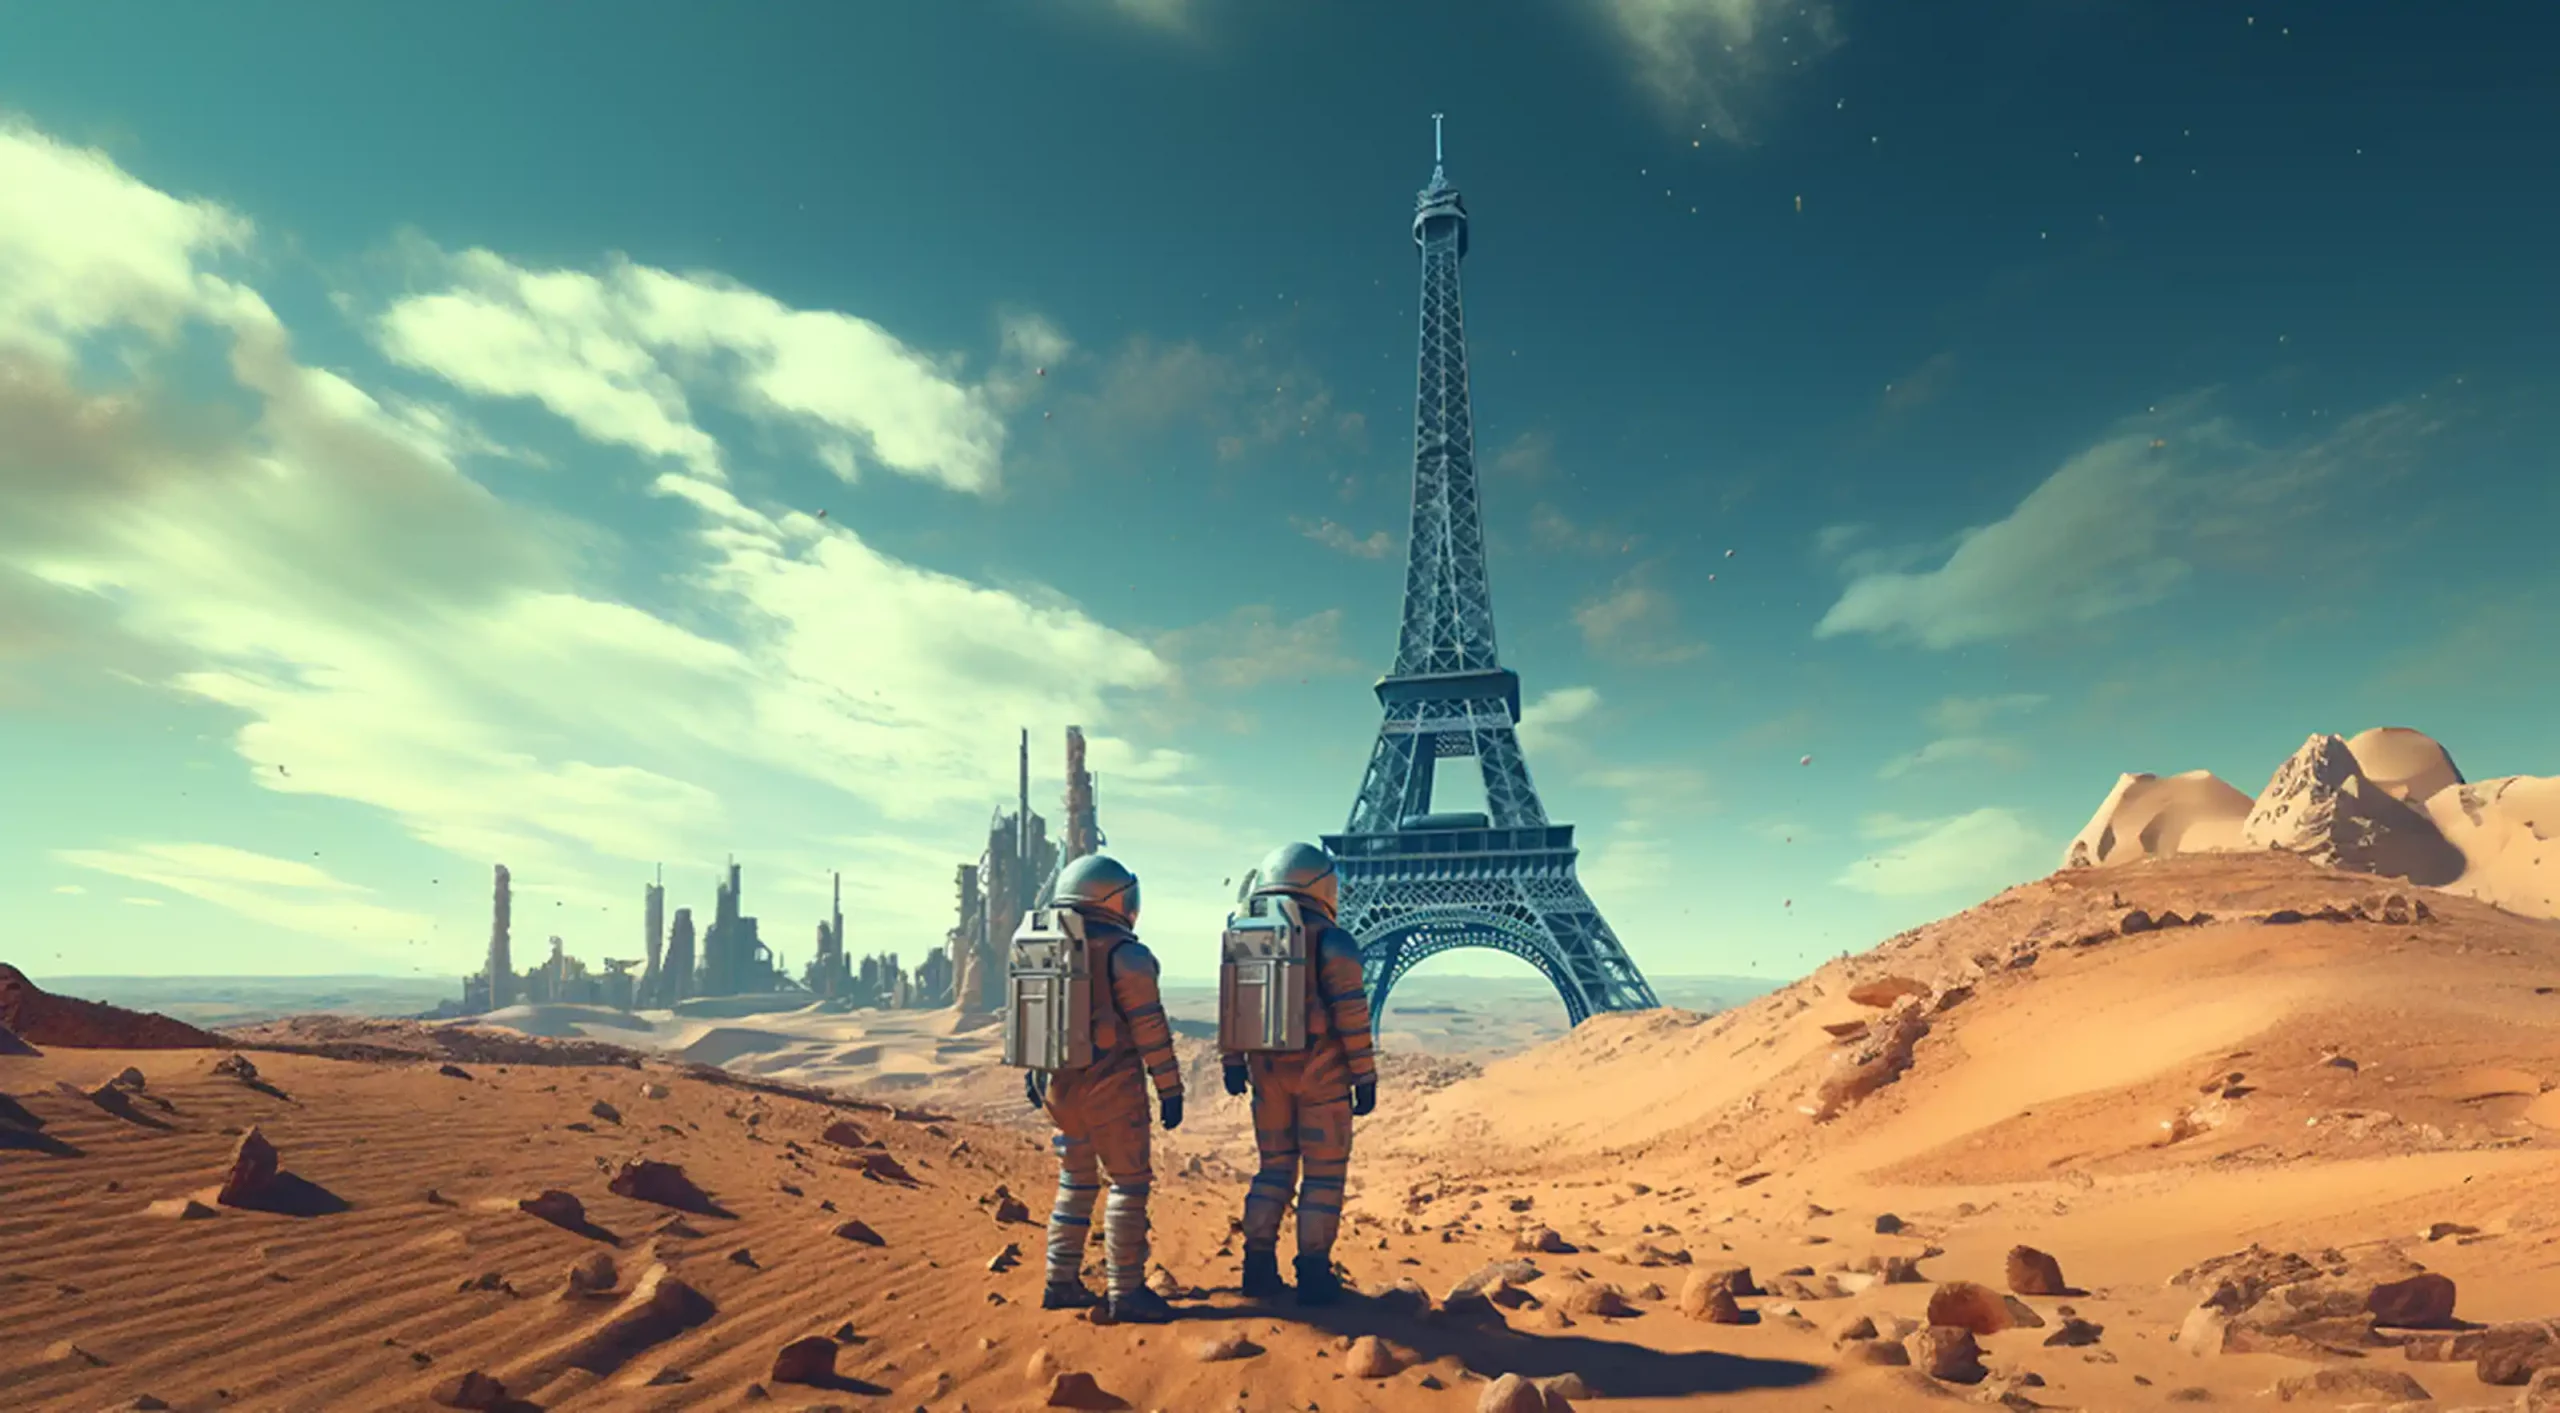 Astronauten die eigentlich von Beruf Soziologe sind in einer Wüstenlandschaft mit Eiffelturm aus Frankreich. Eine Art Studie zur Soziologie